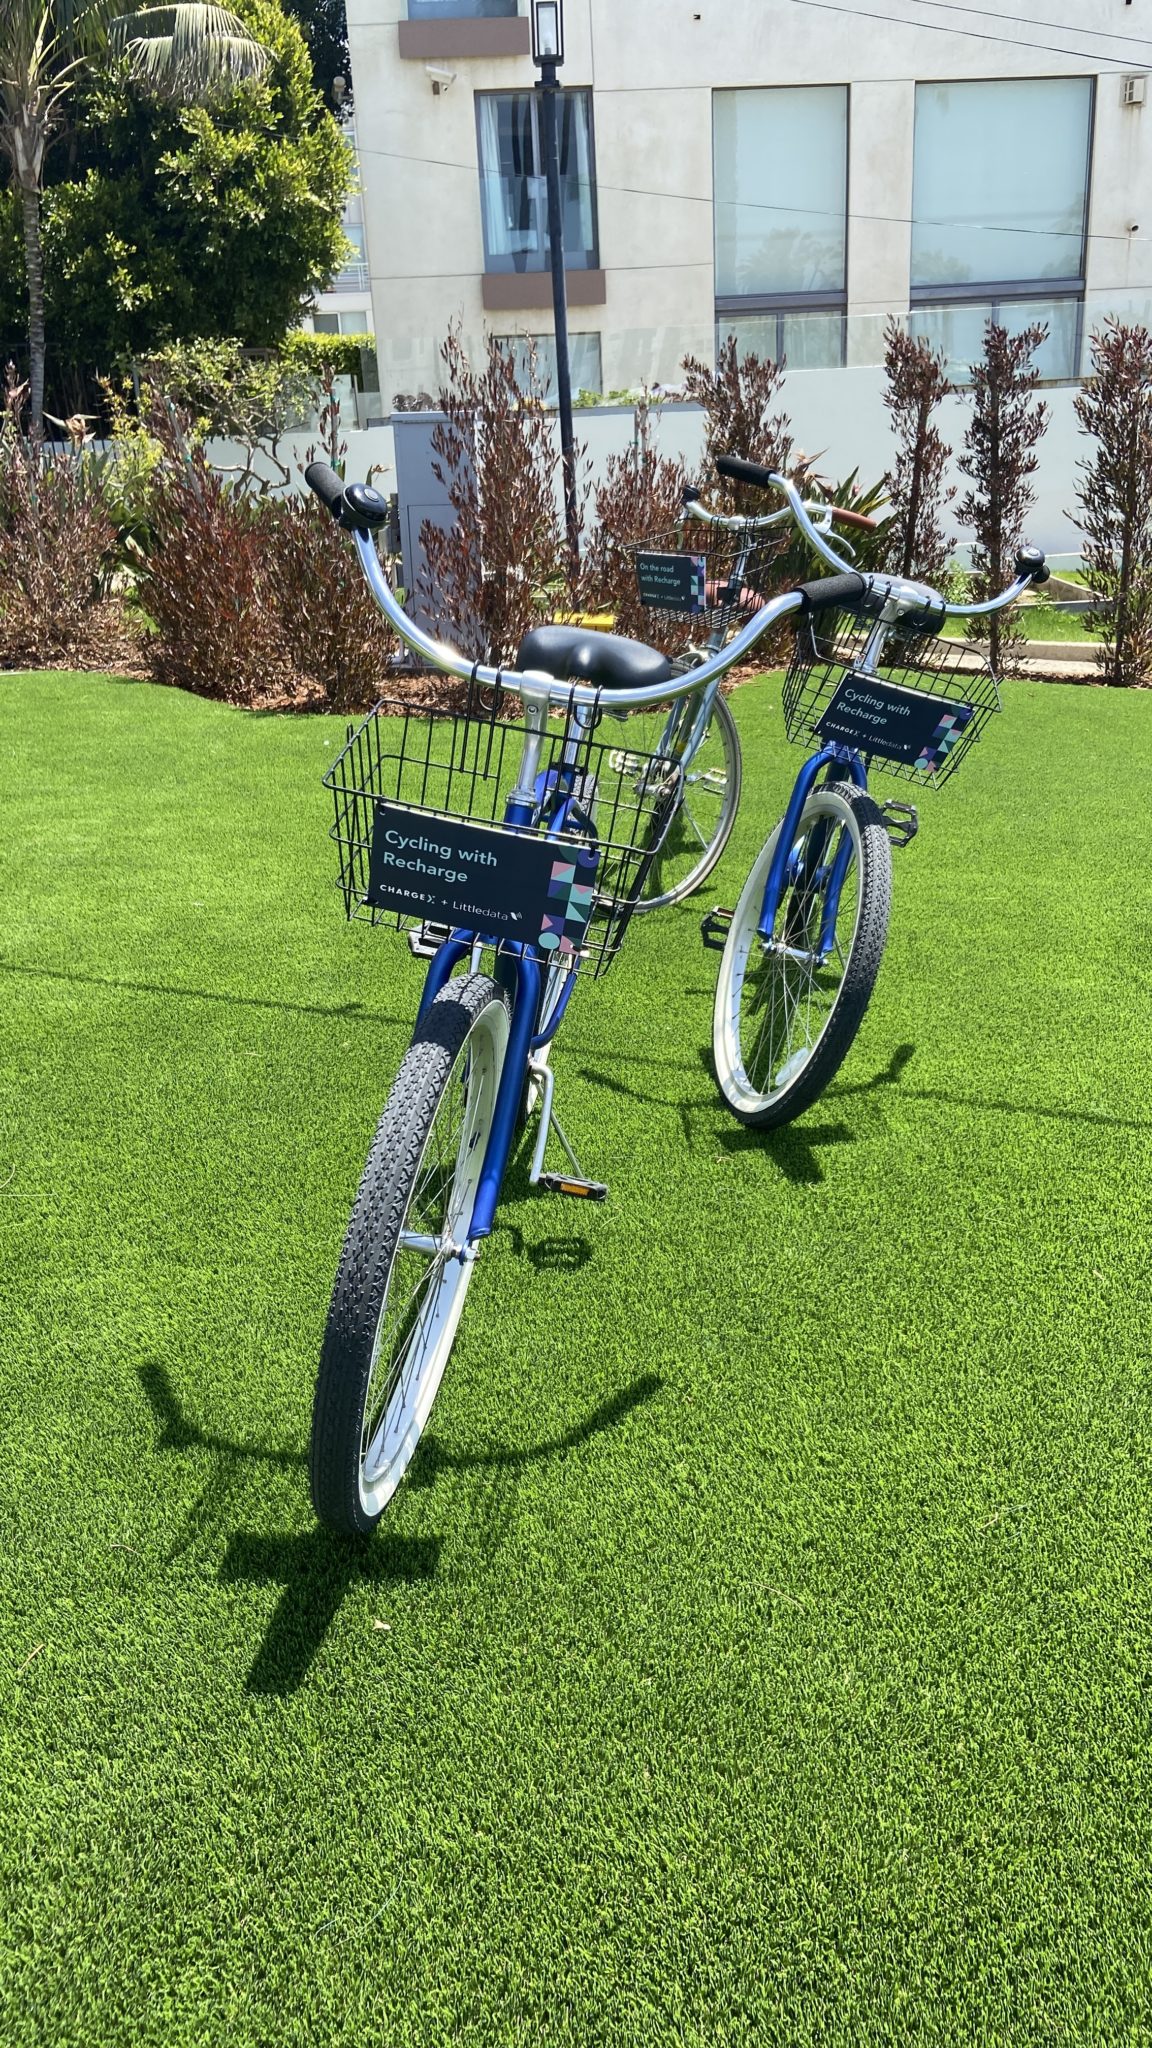 Dwa niebieskie rowery z logo ChargeX na przednich koszach stoją z nóżkami na trawie, gotowe do jazdy.